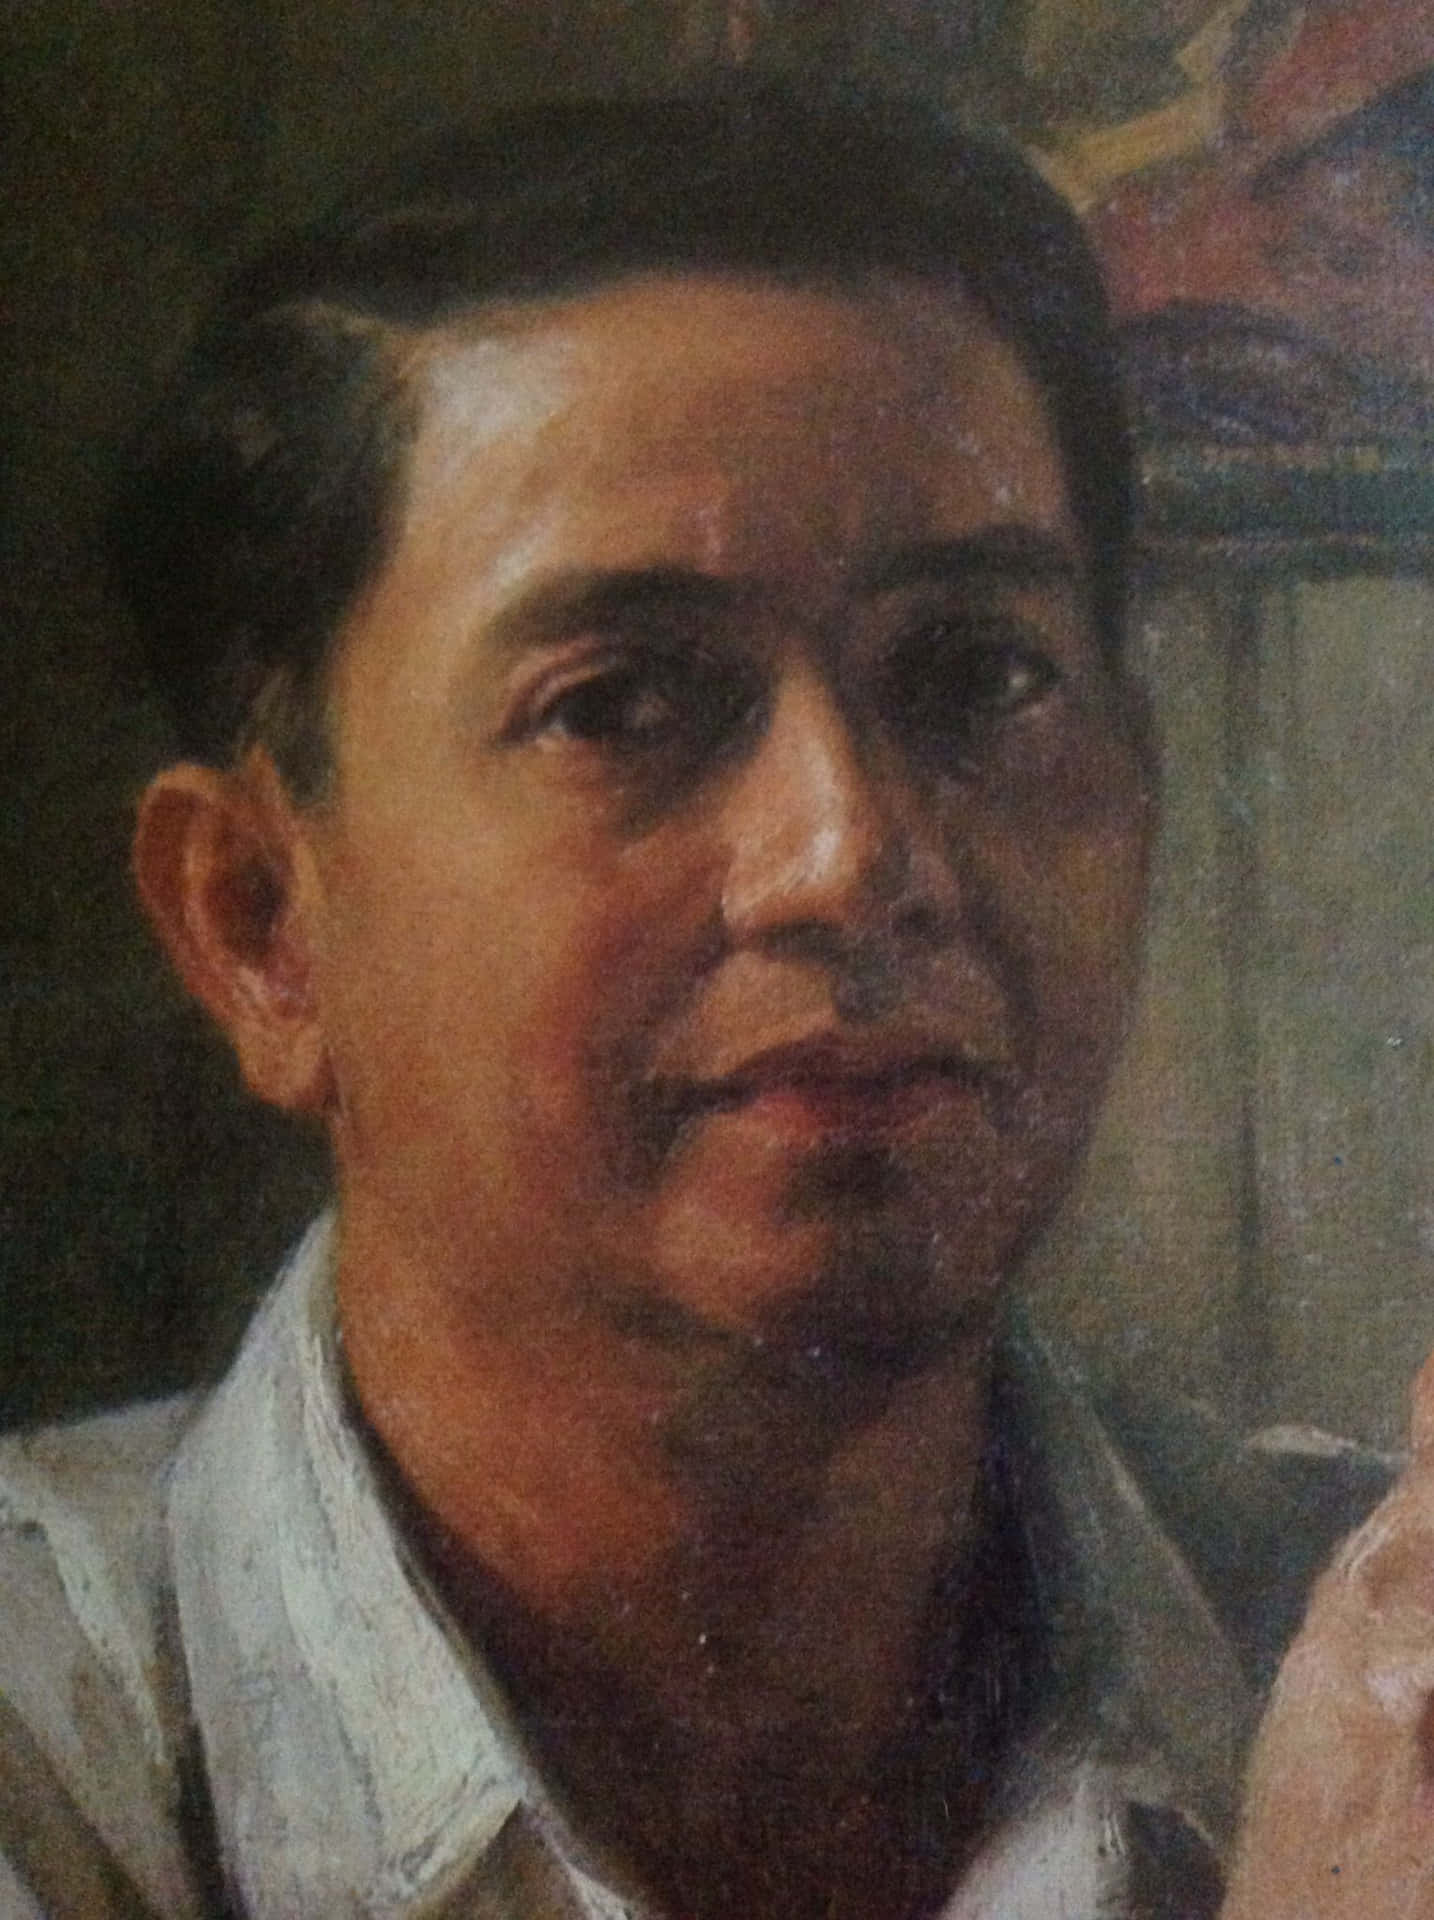 Porträttbildpå Fernando Amorsolo.